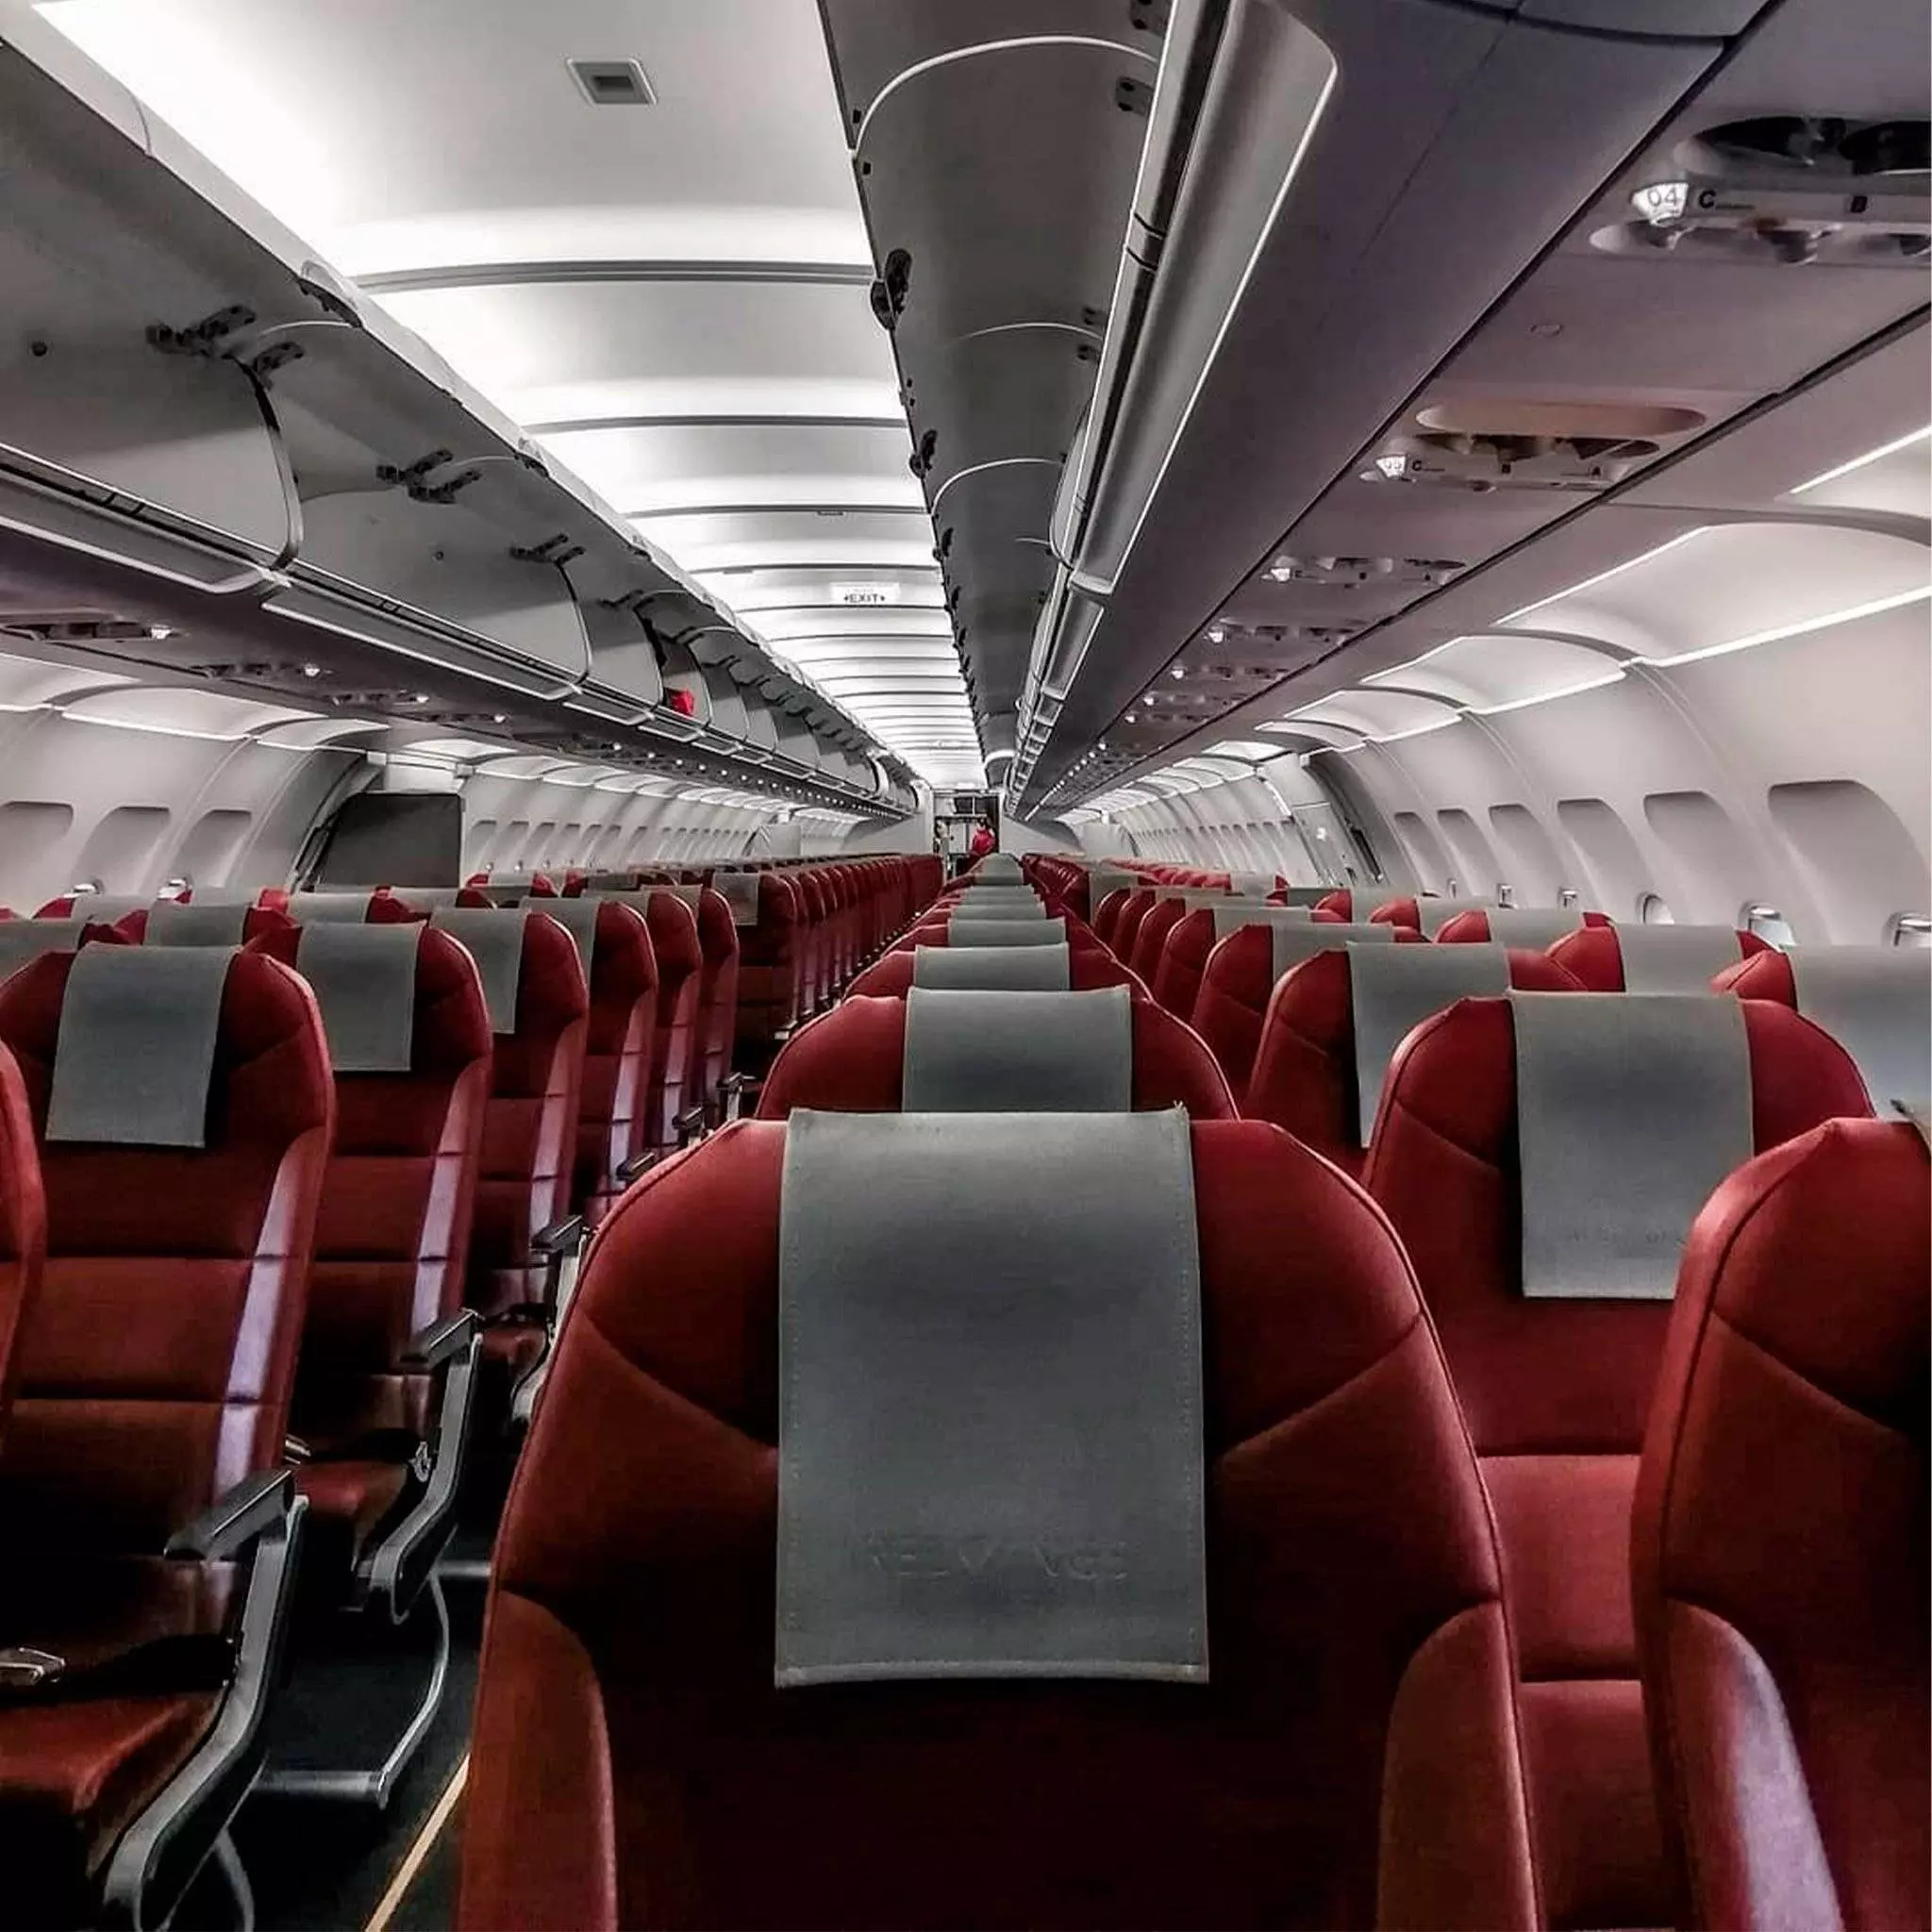 Red wings - отзывы пассажиров 2017-2018 про авиакомпанию ред вингс - страница №5